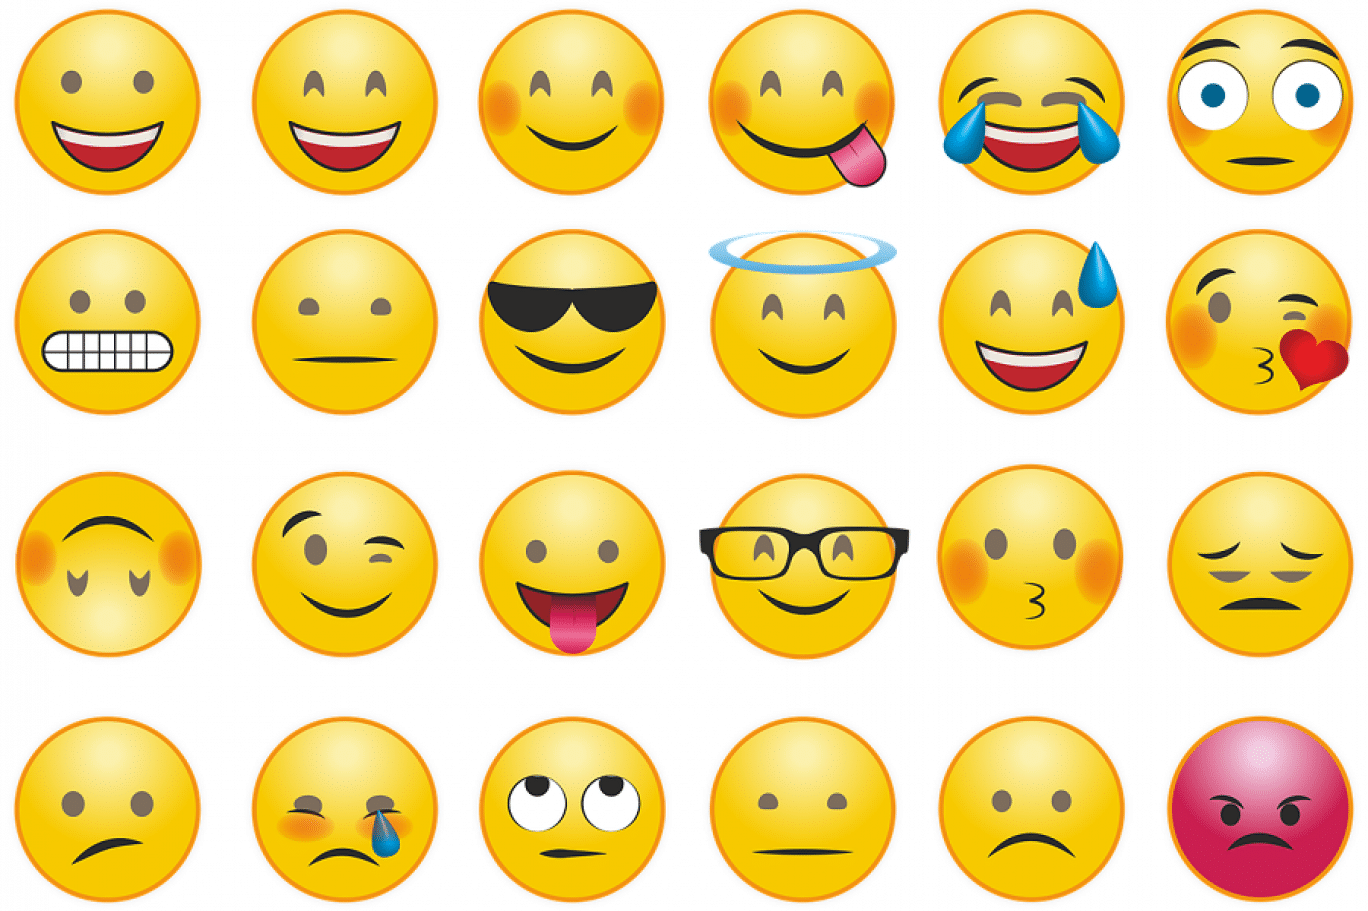 معاني الايموجي Emoji كاملة والفرق بين الايموجي والايموشن 268346-1439502527-1.